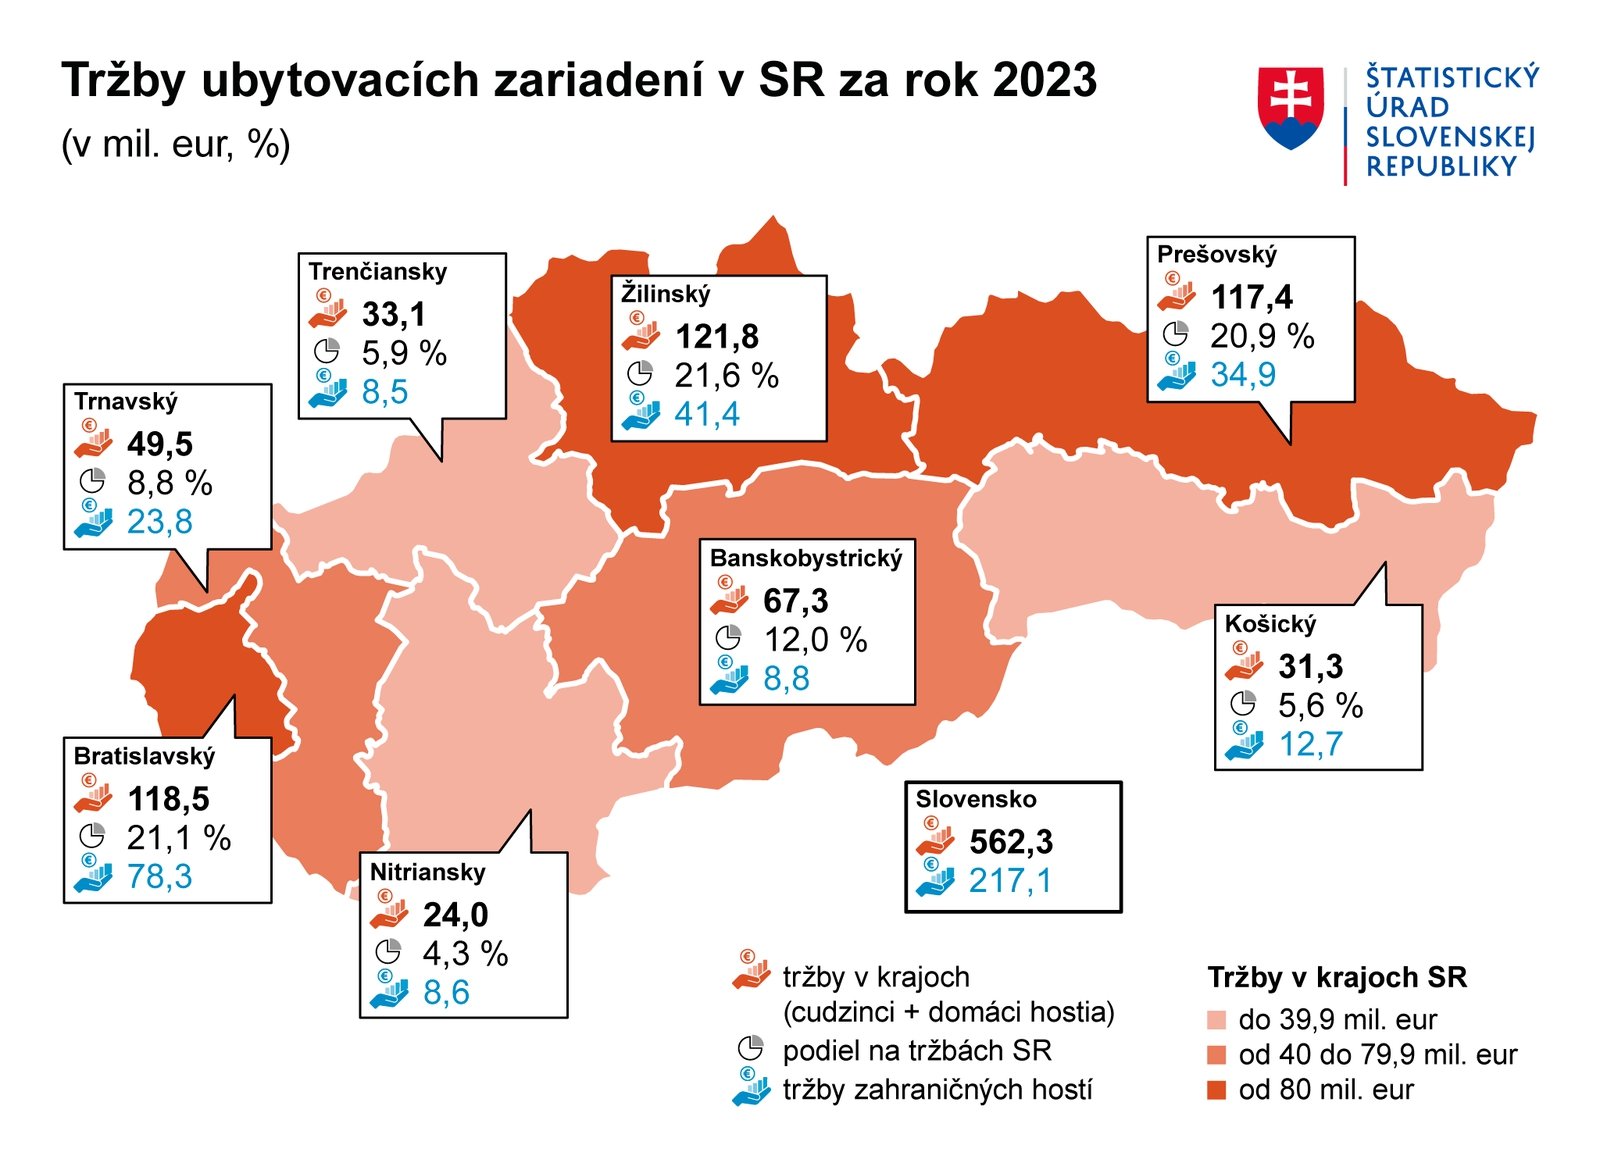 Tržby ubytovacích zariadení na Slovensku za rok 2023